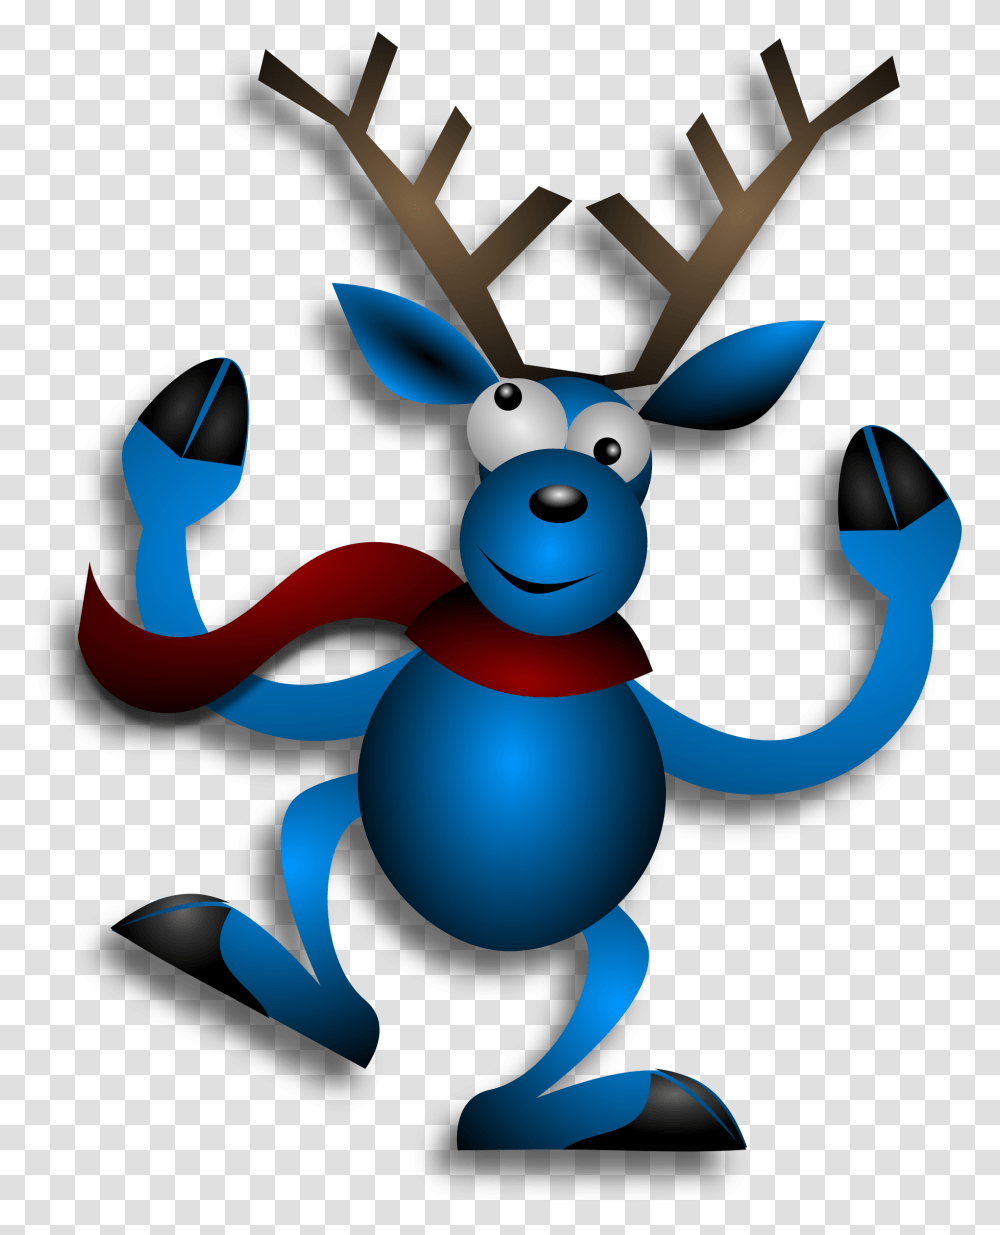 Dancing Reindeer Clipart Blue Christmas Reindeer Cartoon, Wildlife, Mammal, Animal, Elk Transparent Png